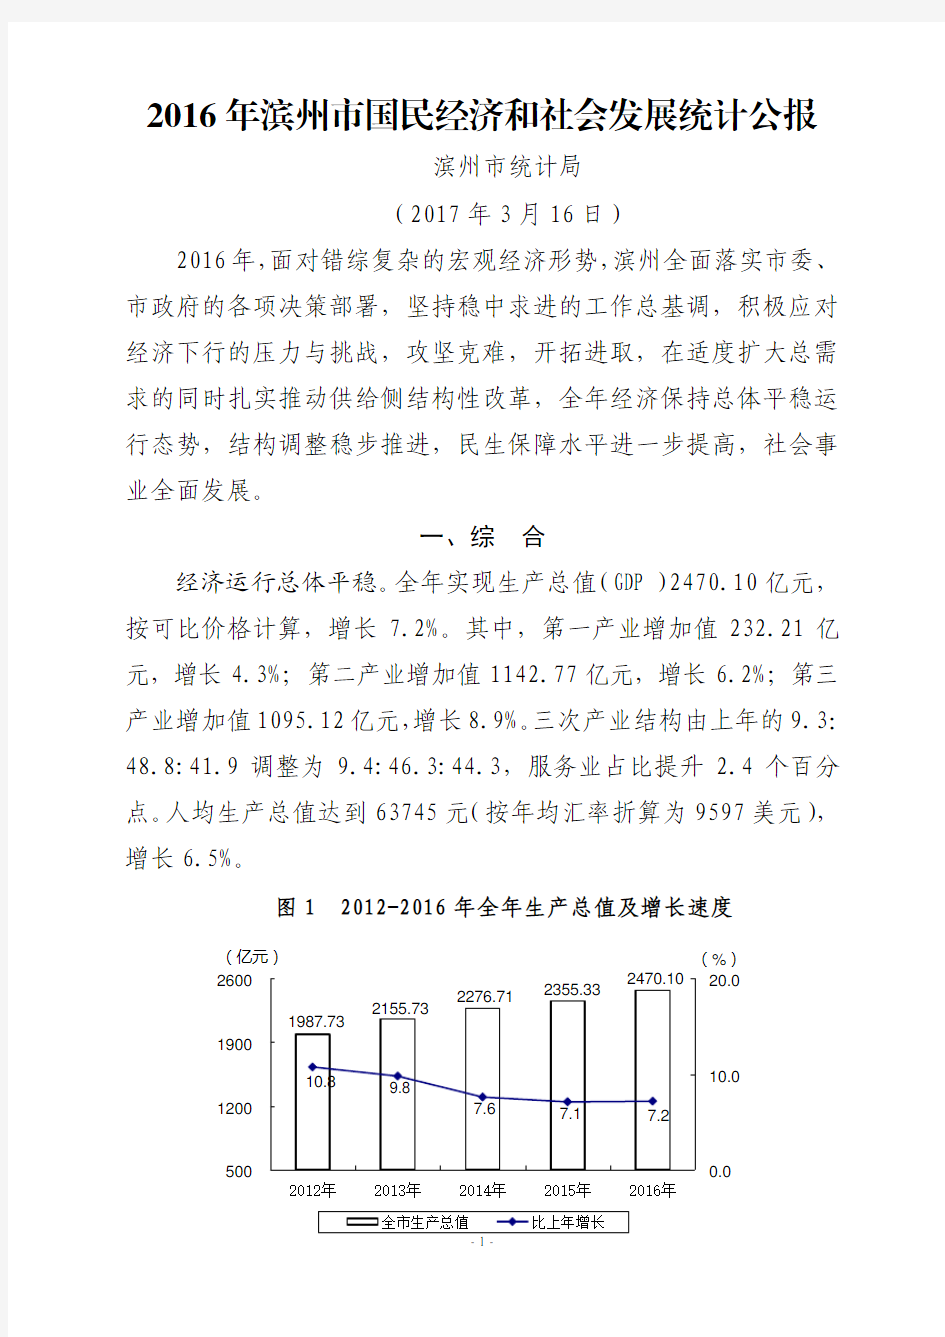 2016年滨州市国民经济和社会发展统计公报